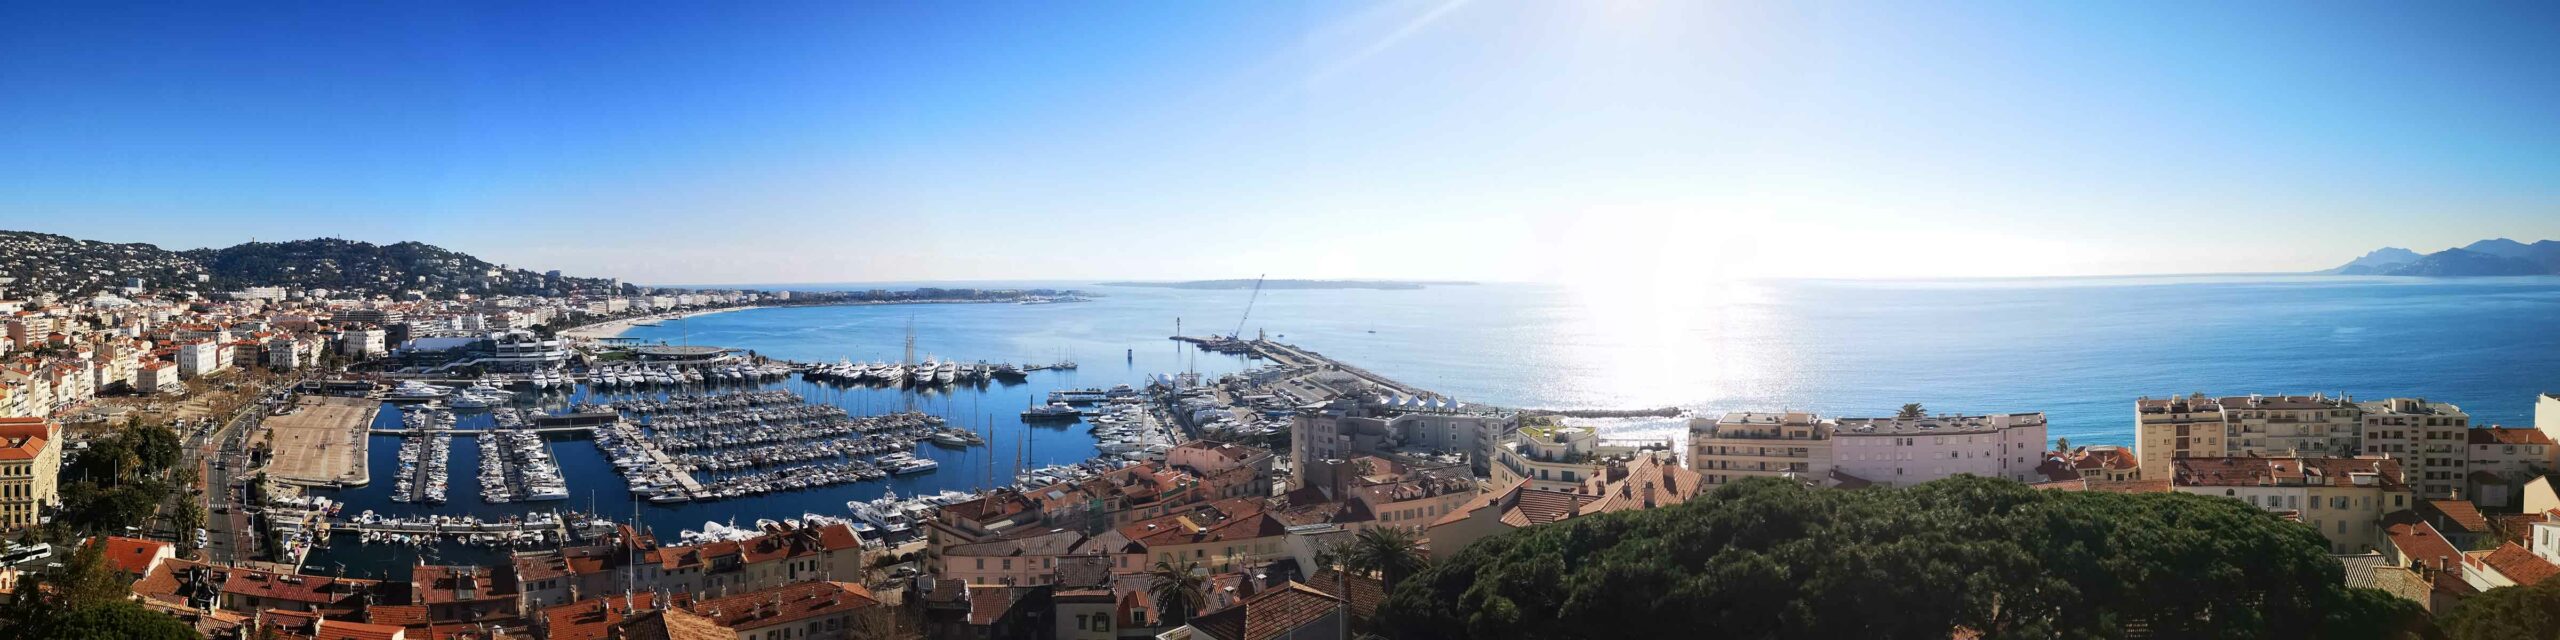 Vue panoramique sur le port de Cannes et la Baie de Cannes depuis les hauteurs de la vieille ville